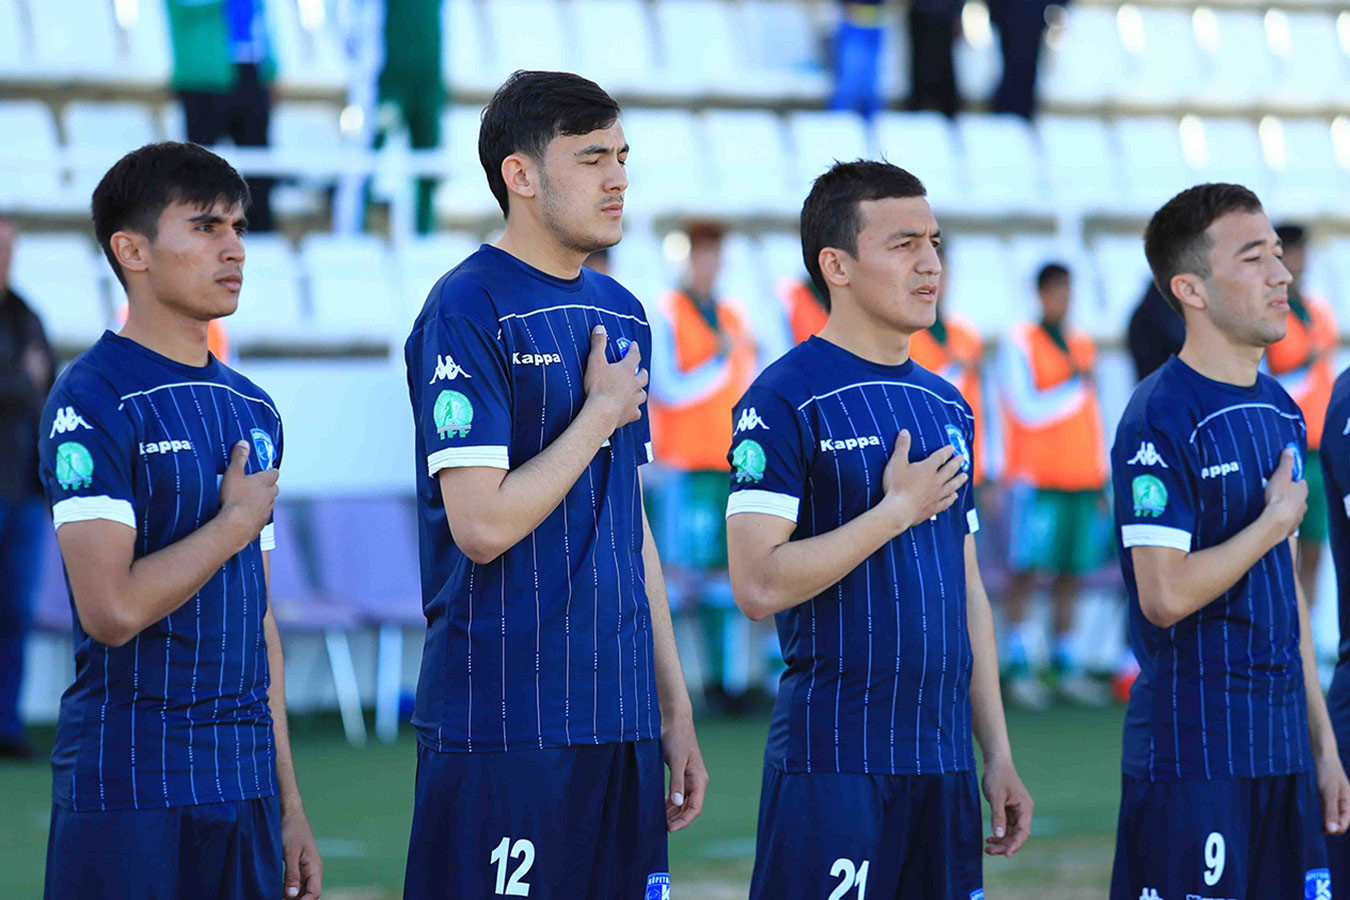 Статистический прогноз: «Копетдаг» — «Алтын Асыр», ставка на чемпионат Туркмении